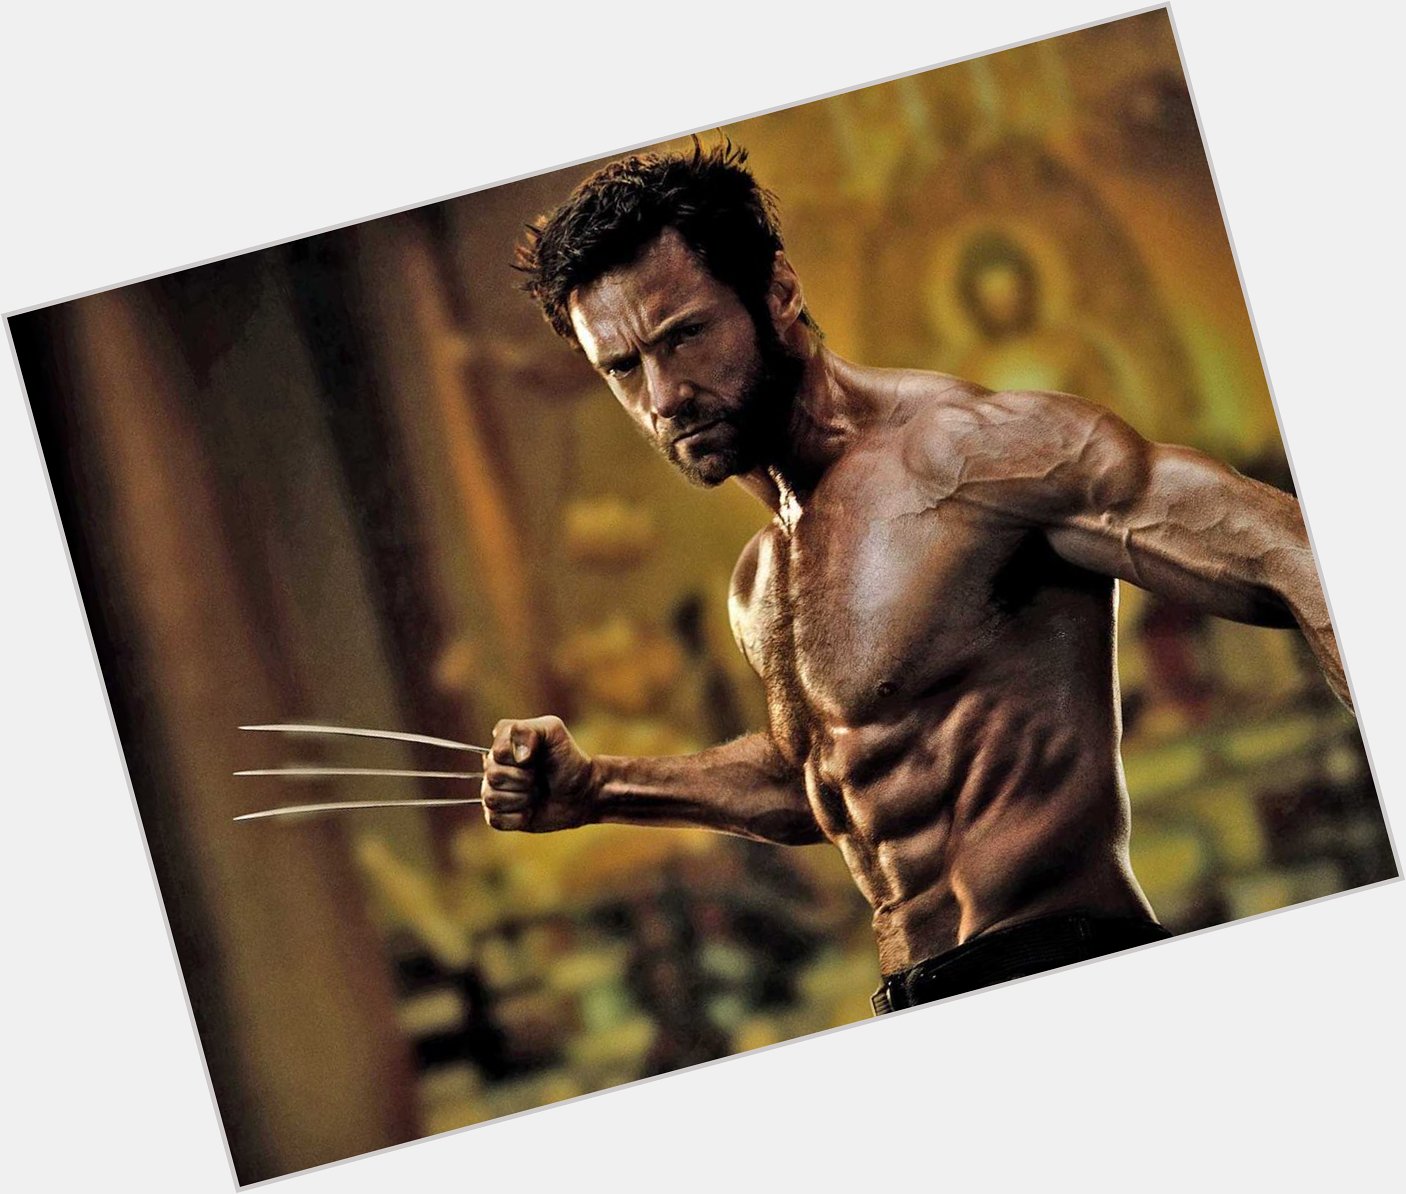 Selbst Wolverine wird älter: Hugh Jackman wird heute 47 Jahre alt. Wir wünschen ihm alles Gute, Happy Birthday! 